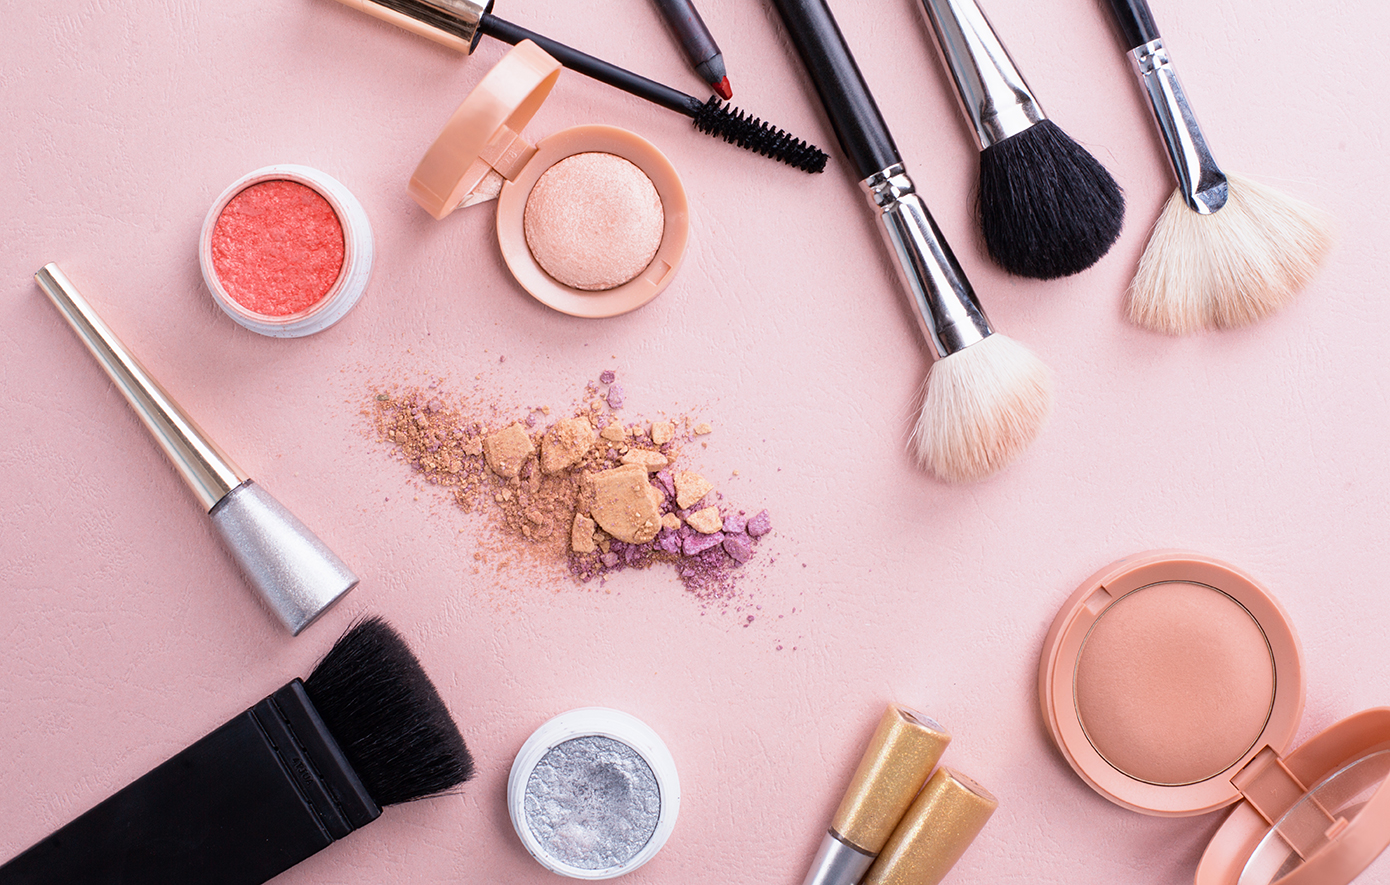 Τα 8 εργαλεία μακιγιάζ που πρέπει να έχουμε στο νεσεσέρ μας, σύμφωνα με τους makeup artists